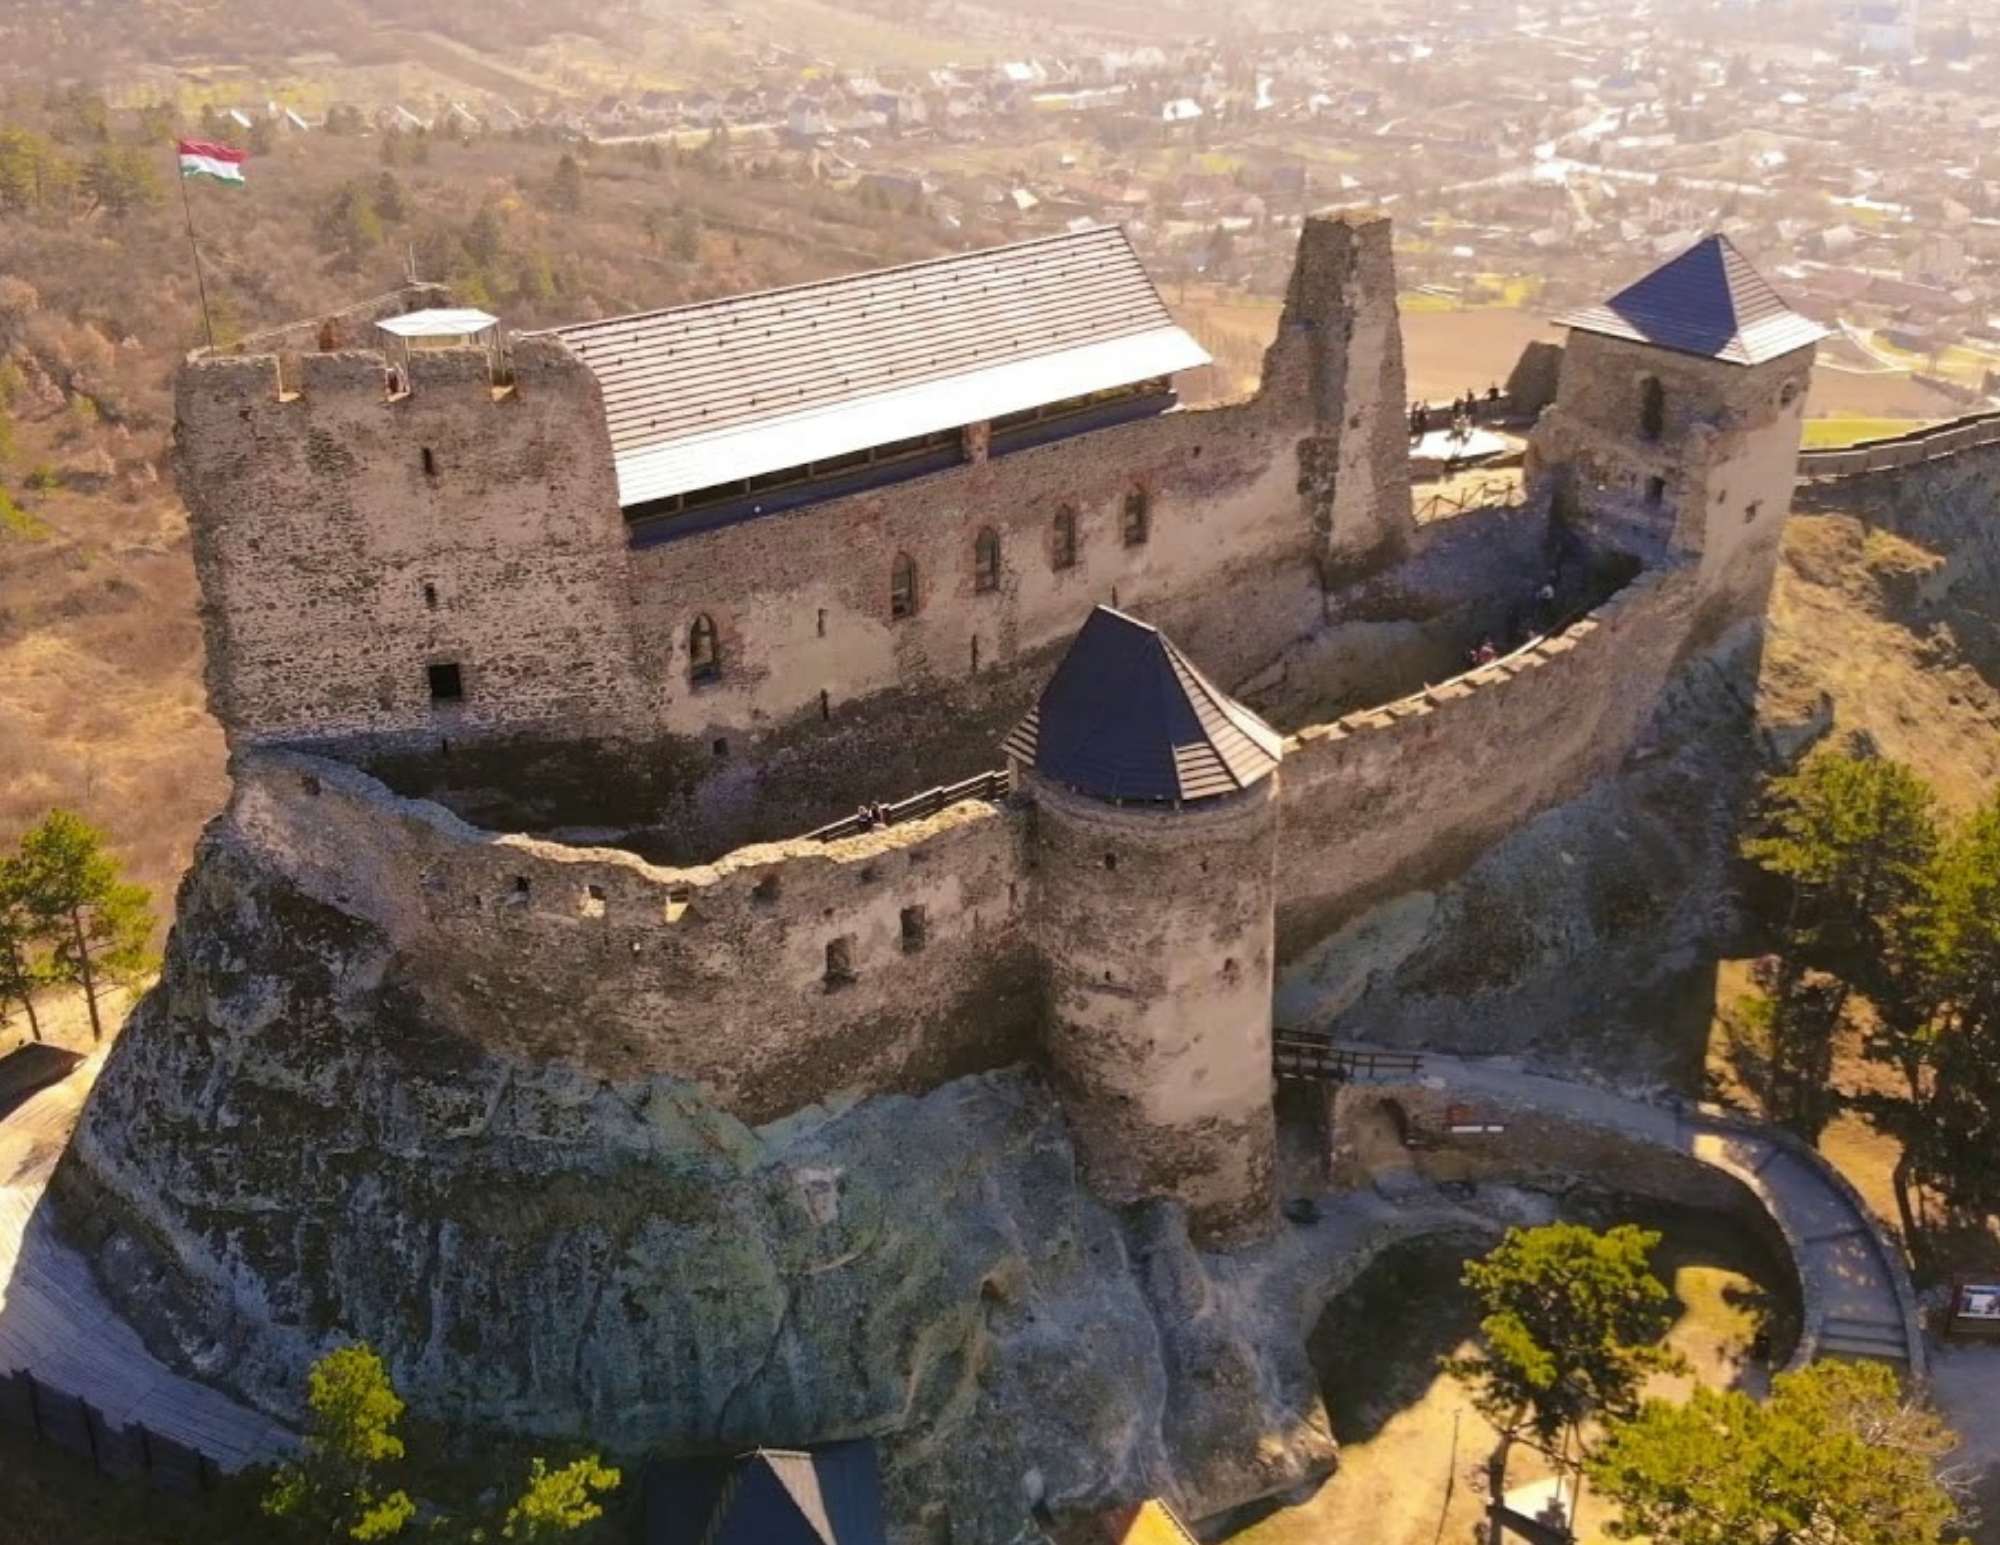 क्या आपने इन हंगेरियन किलों की रहस्यमय किंवदंतियों के बारे में सुना है